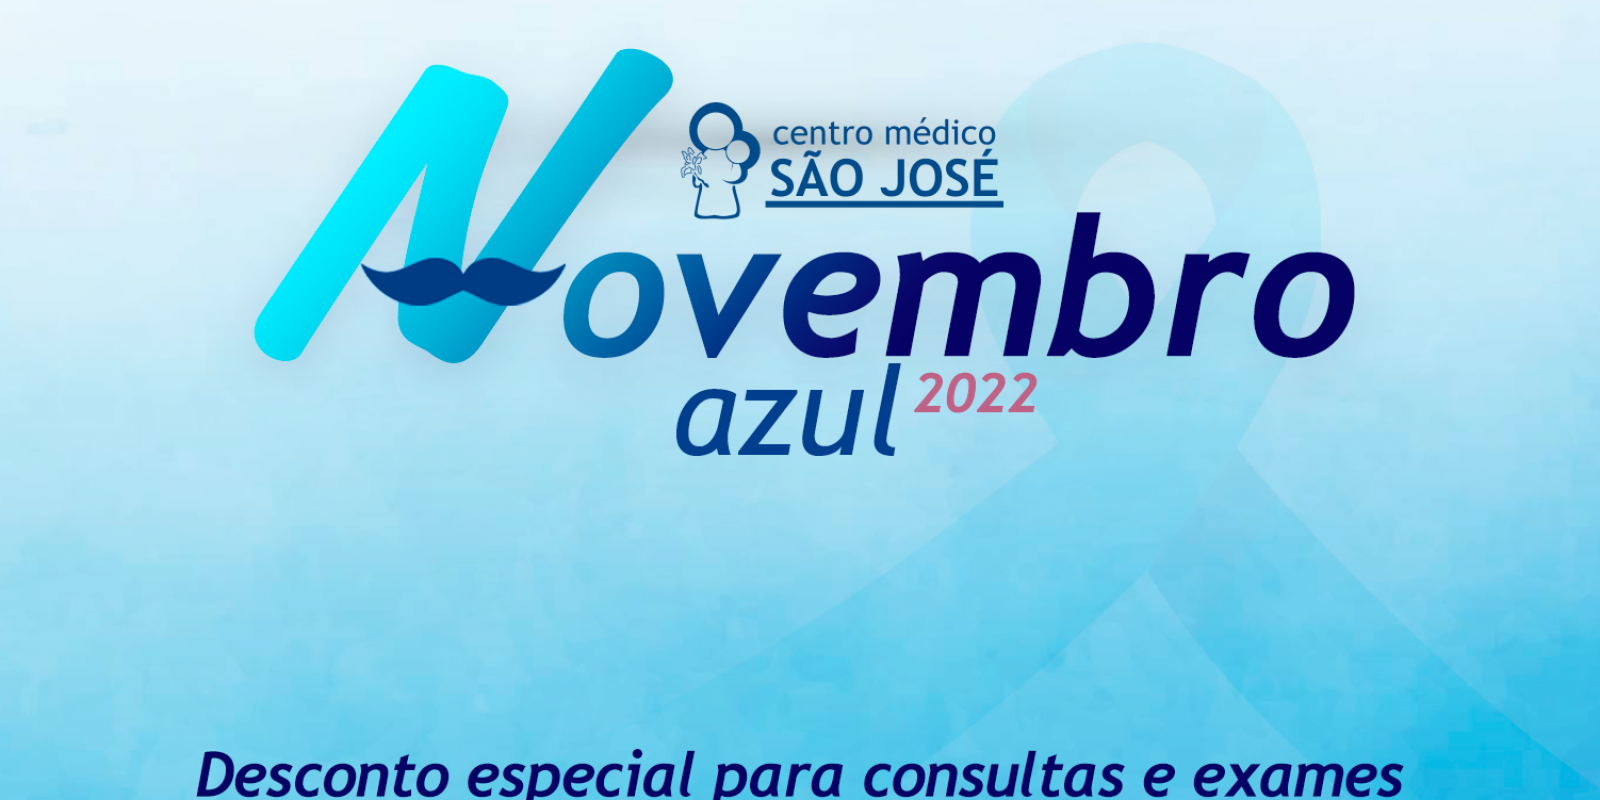 Novembro Azul 2022 convida homens a cuidarem da saúde com descontos em exames